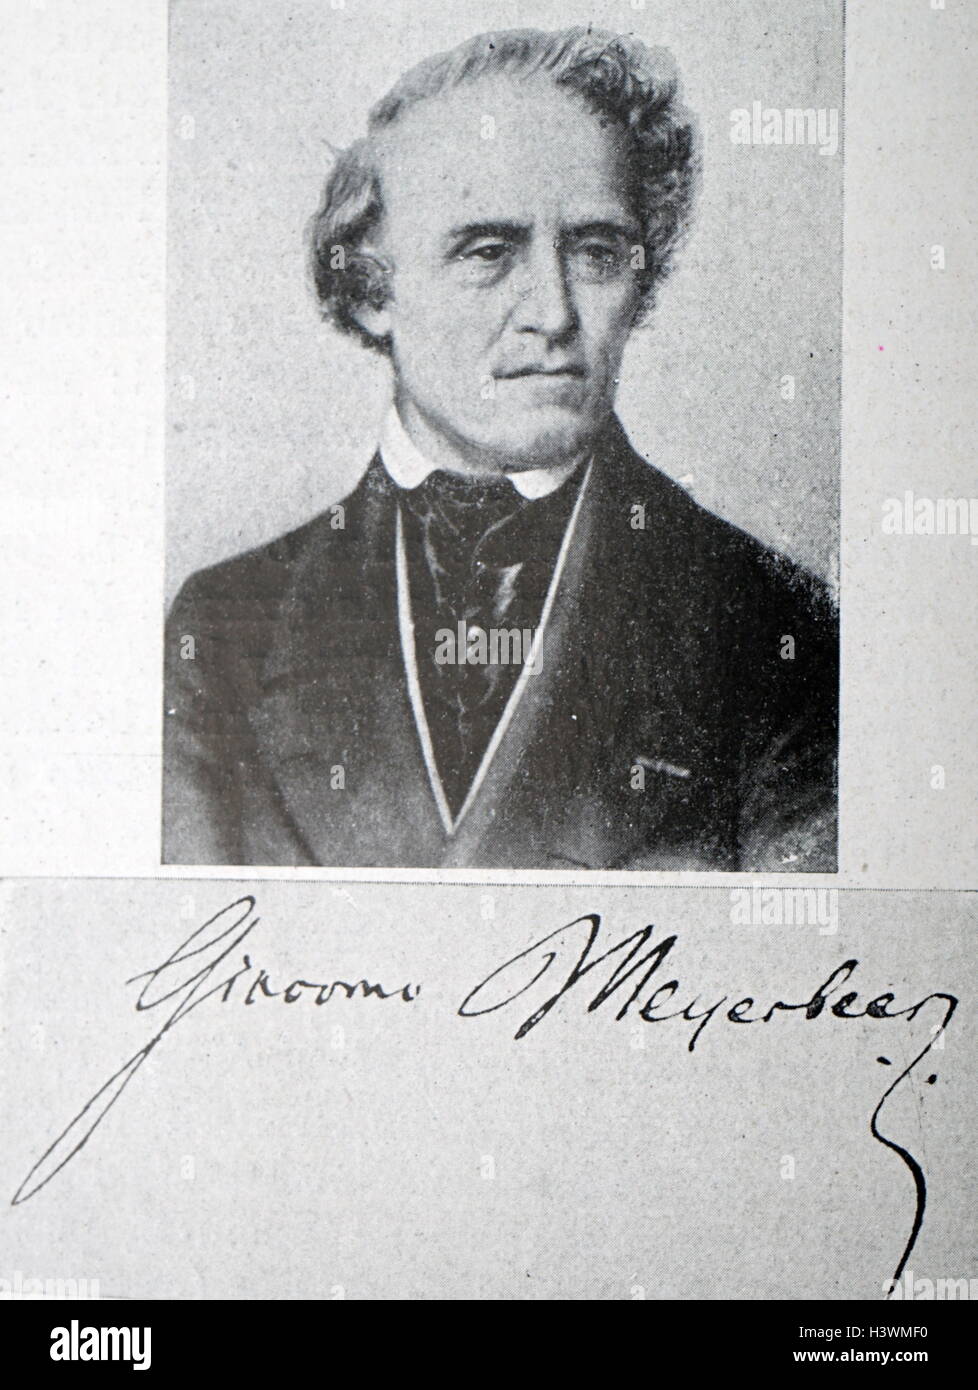 Porträt von Giacomo Meyerbeer (1791-1864), ein deutscher Opernkomponist. Vom 19. Jahrhundert Stockfoto